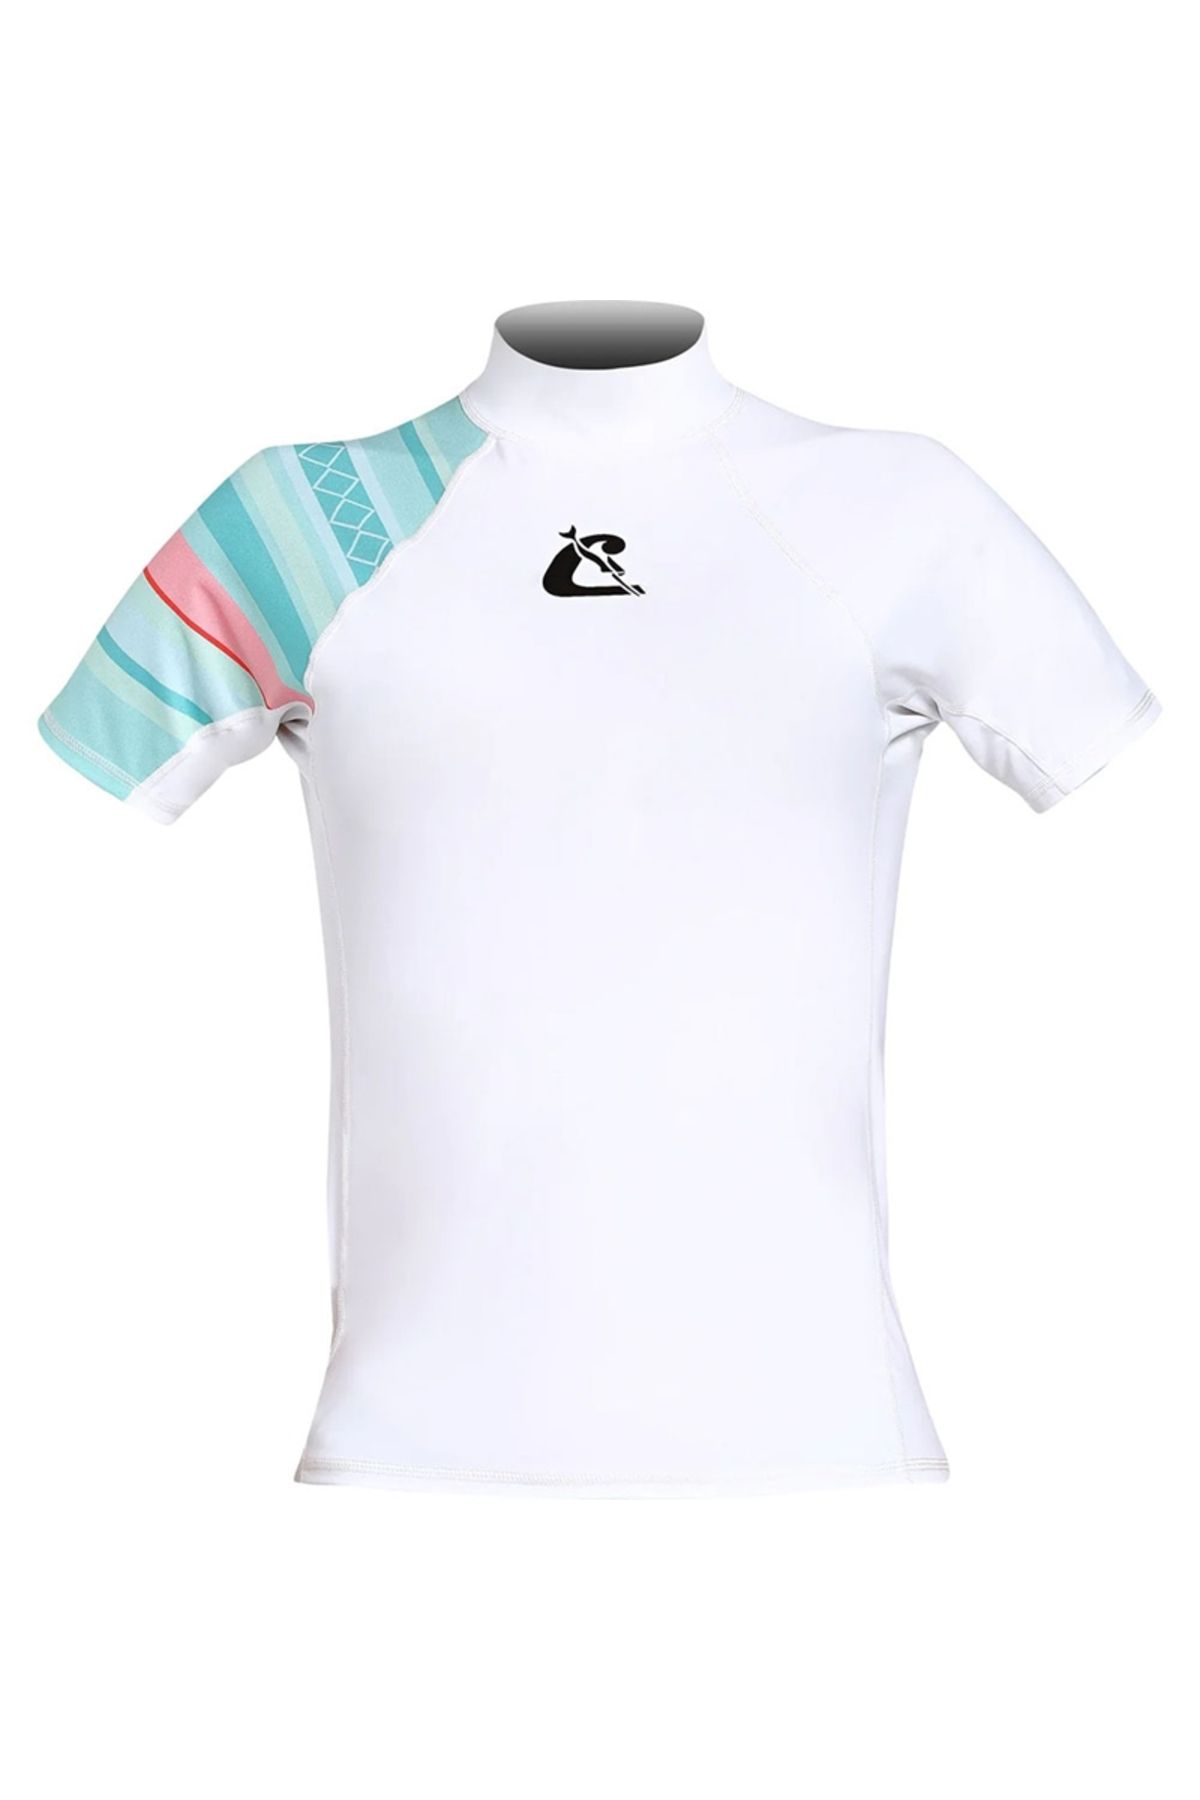 cressi sub Shield Rash Guard Lady T-Shirt WHITE - AQUAMARINE-XL - NO:5